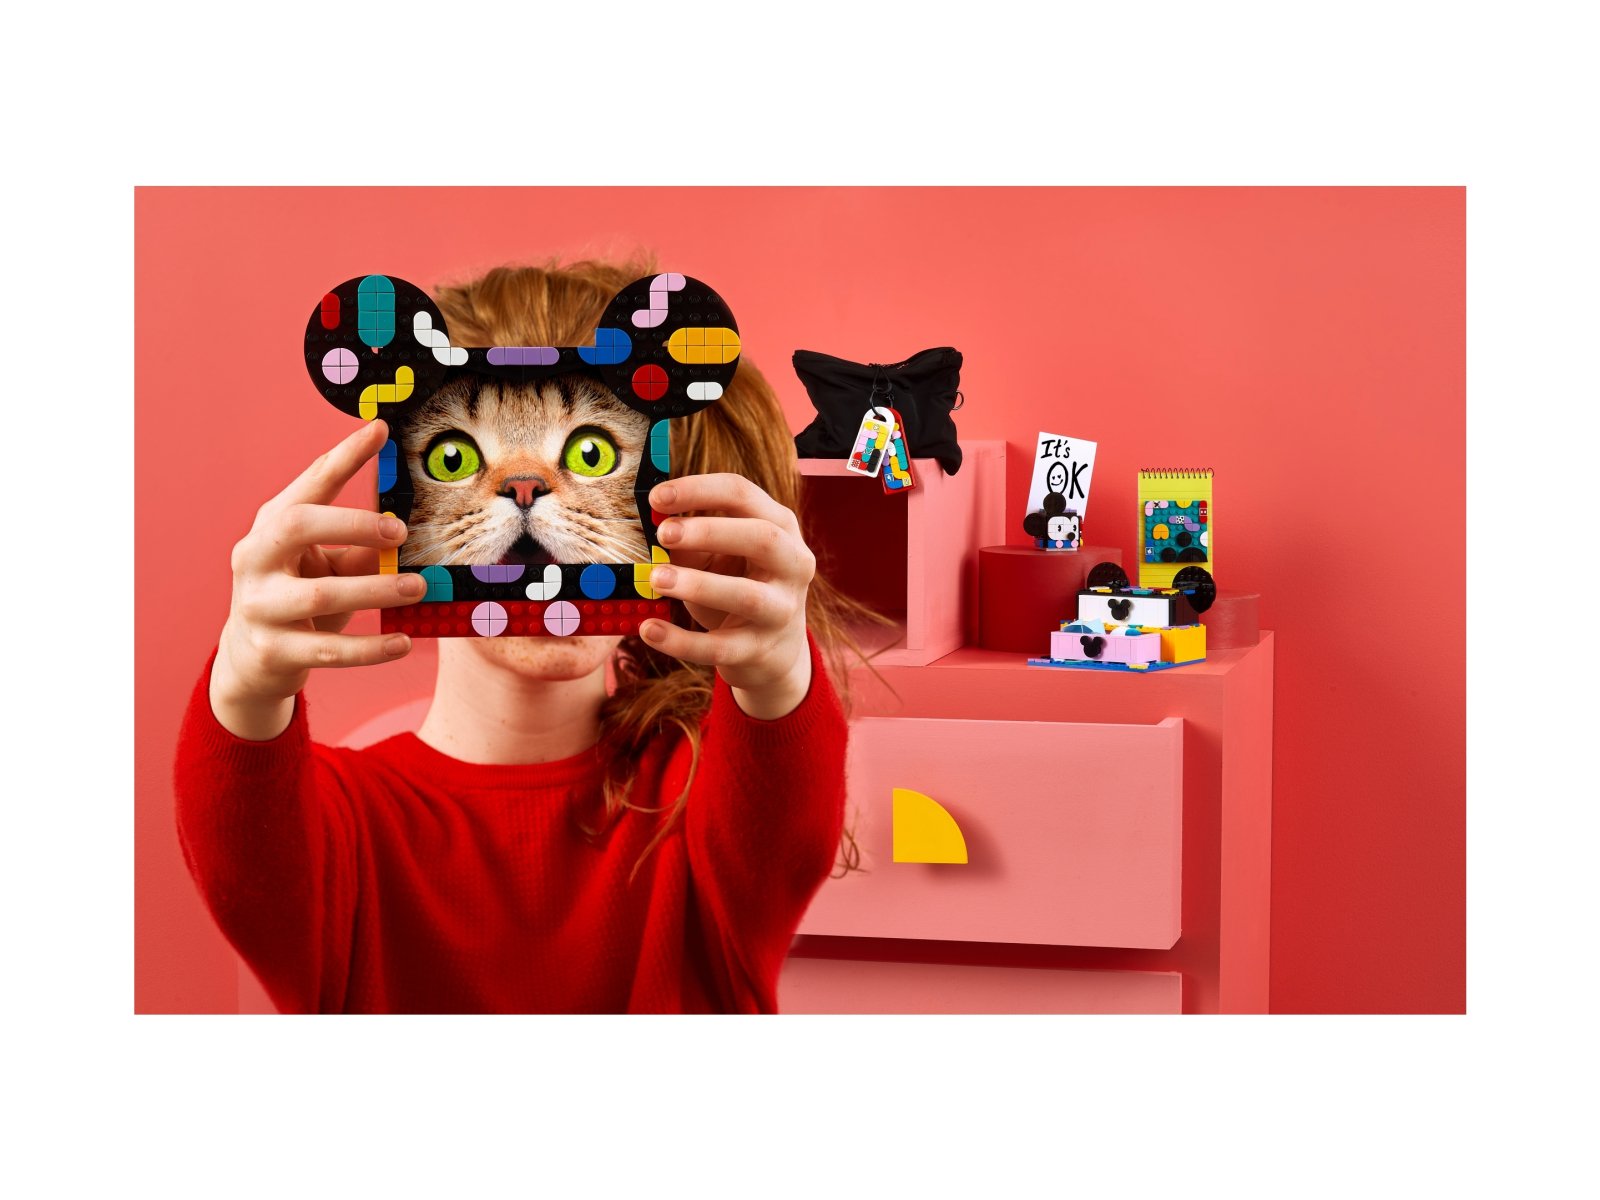 LEGO DOTS Myszka Miki i Myszka Minnie — zestaw szkolny 41964